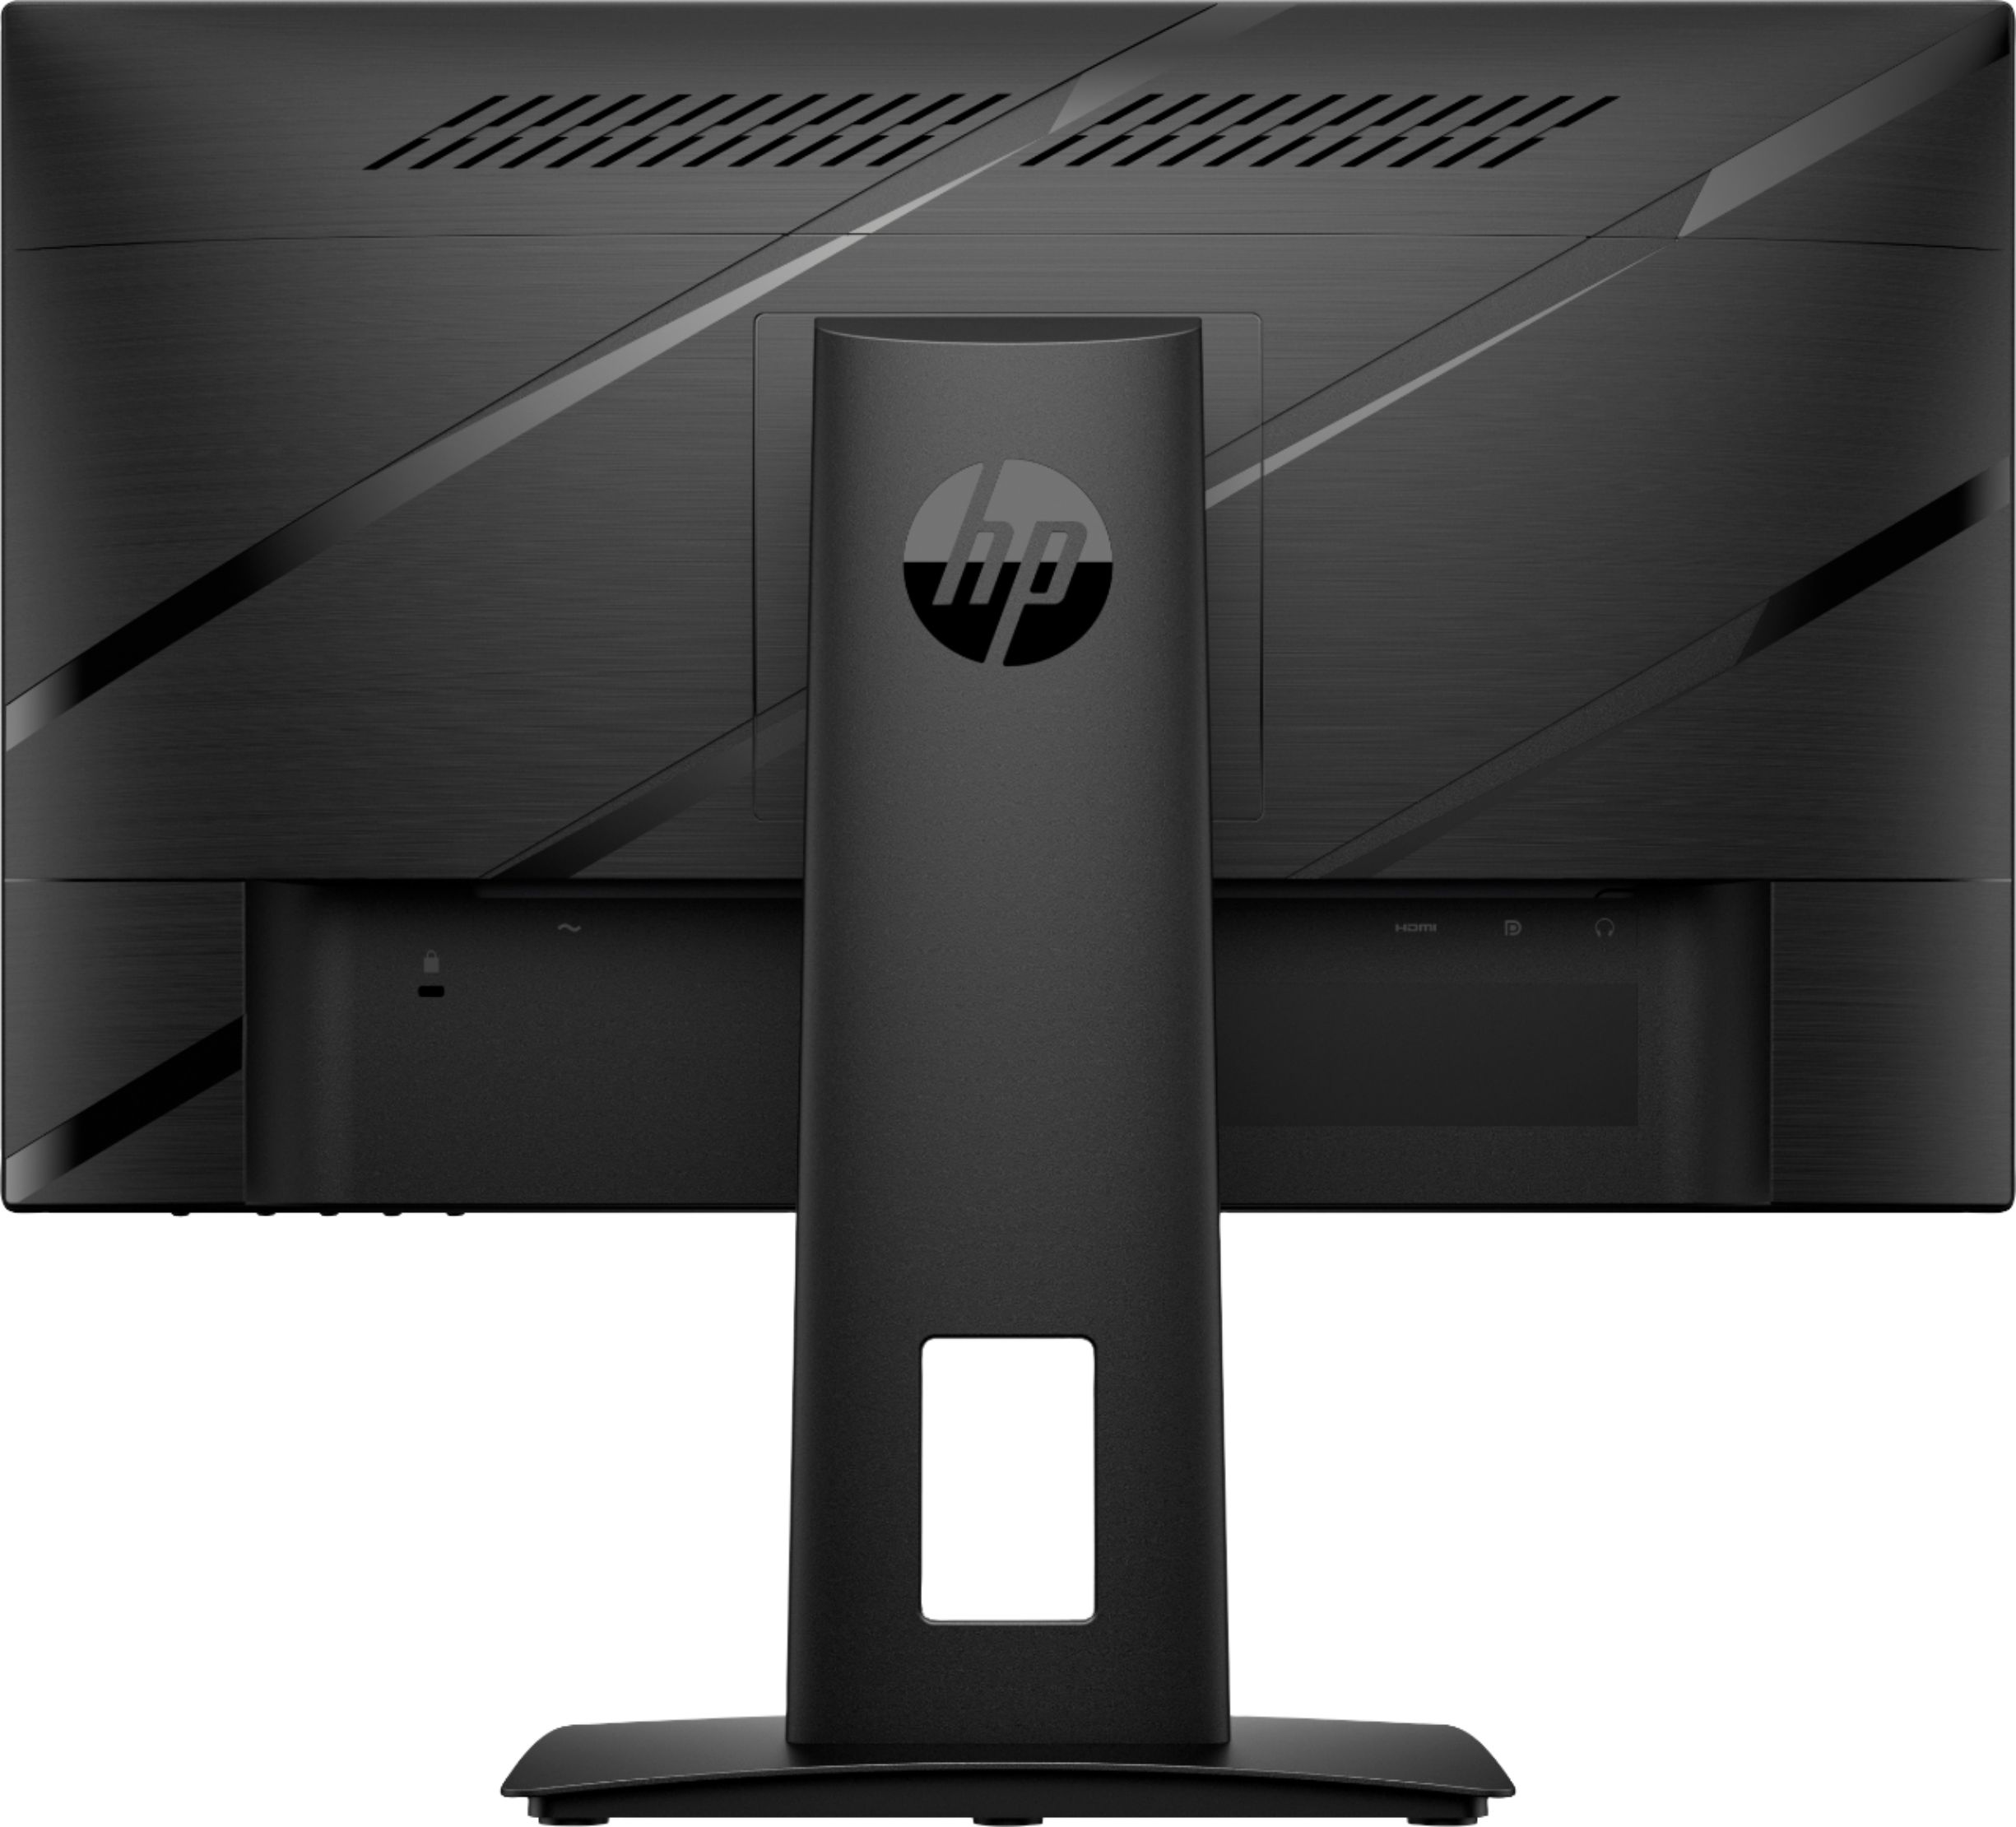 Back View: HP - LaserJet Enterprise M406dn Black-and-White Laser Printer - White